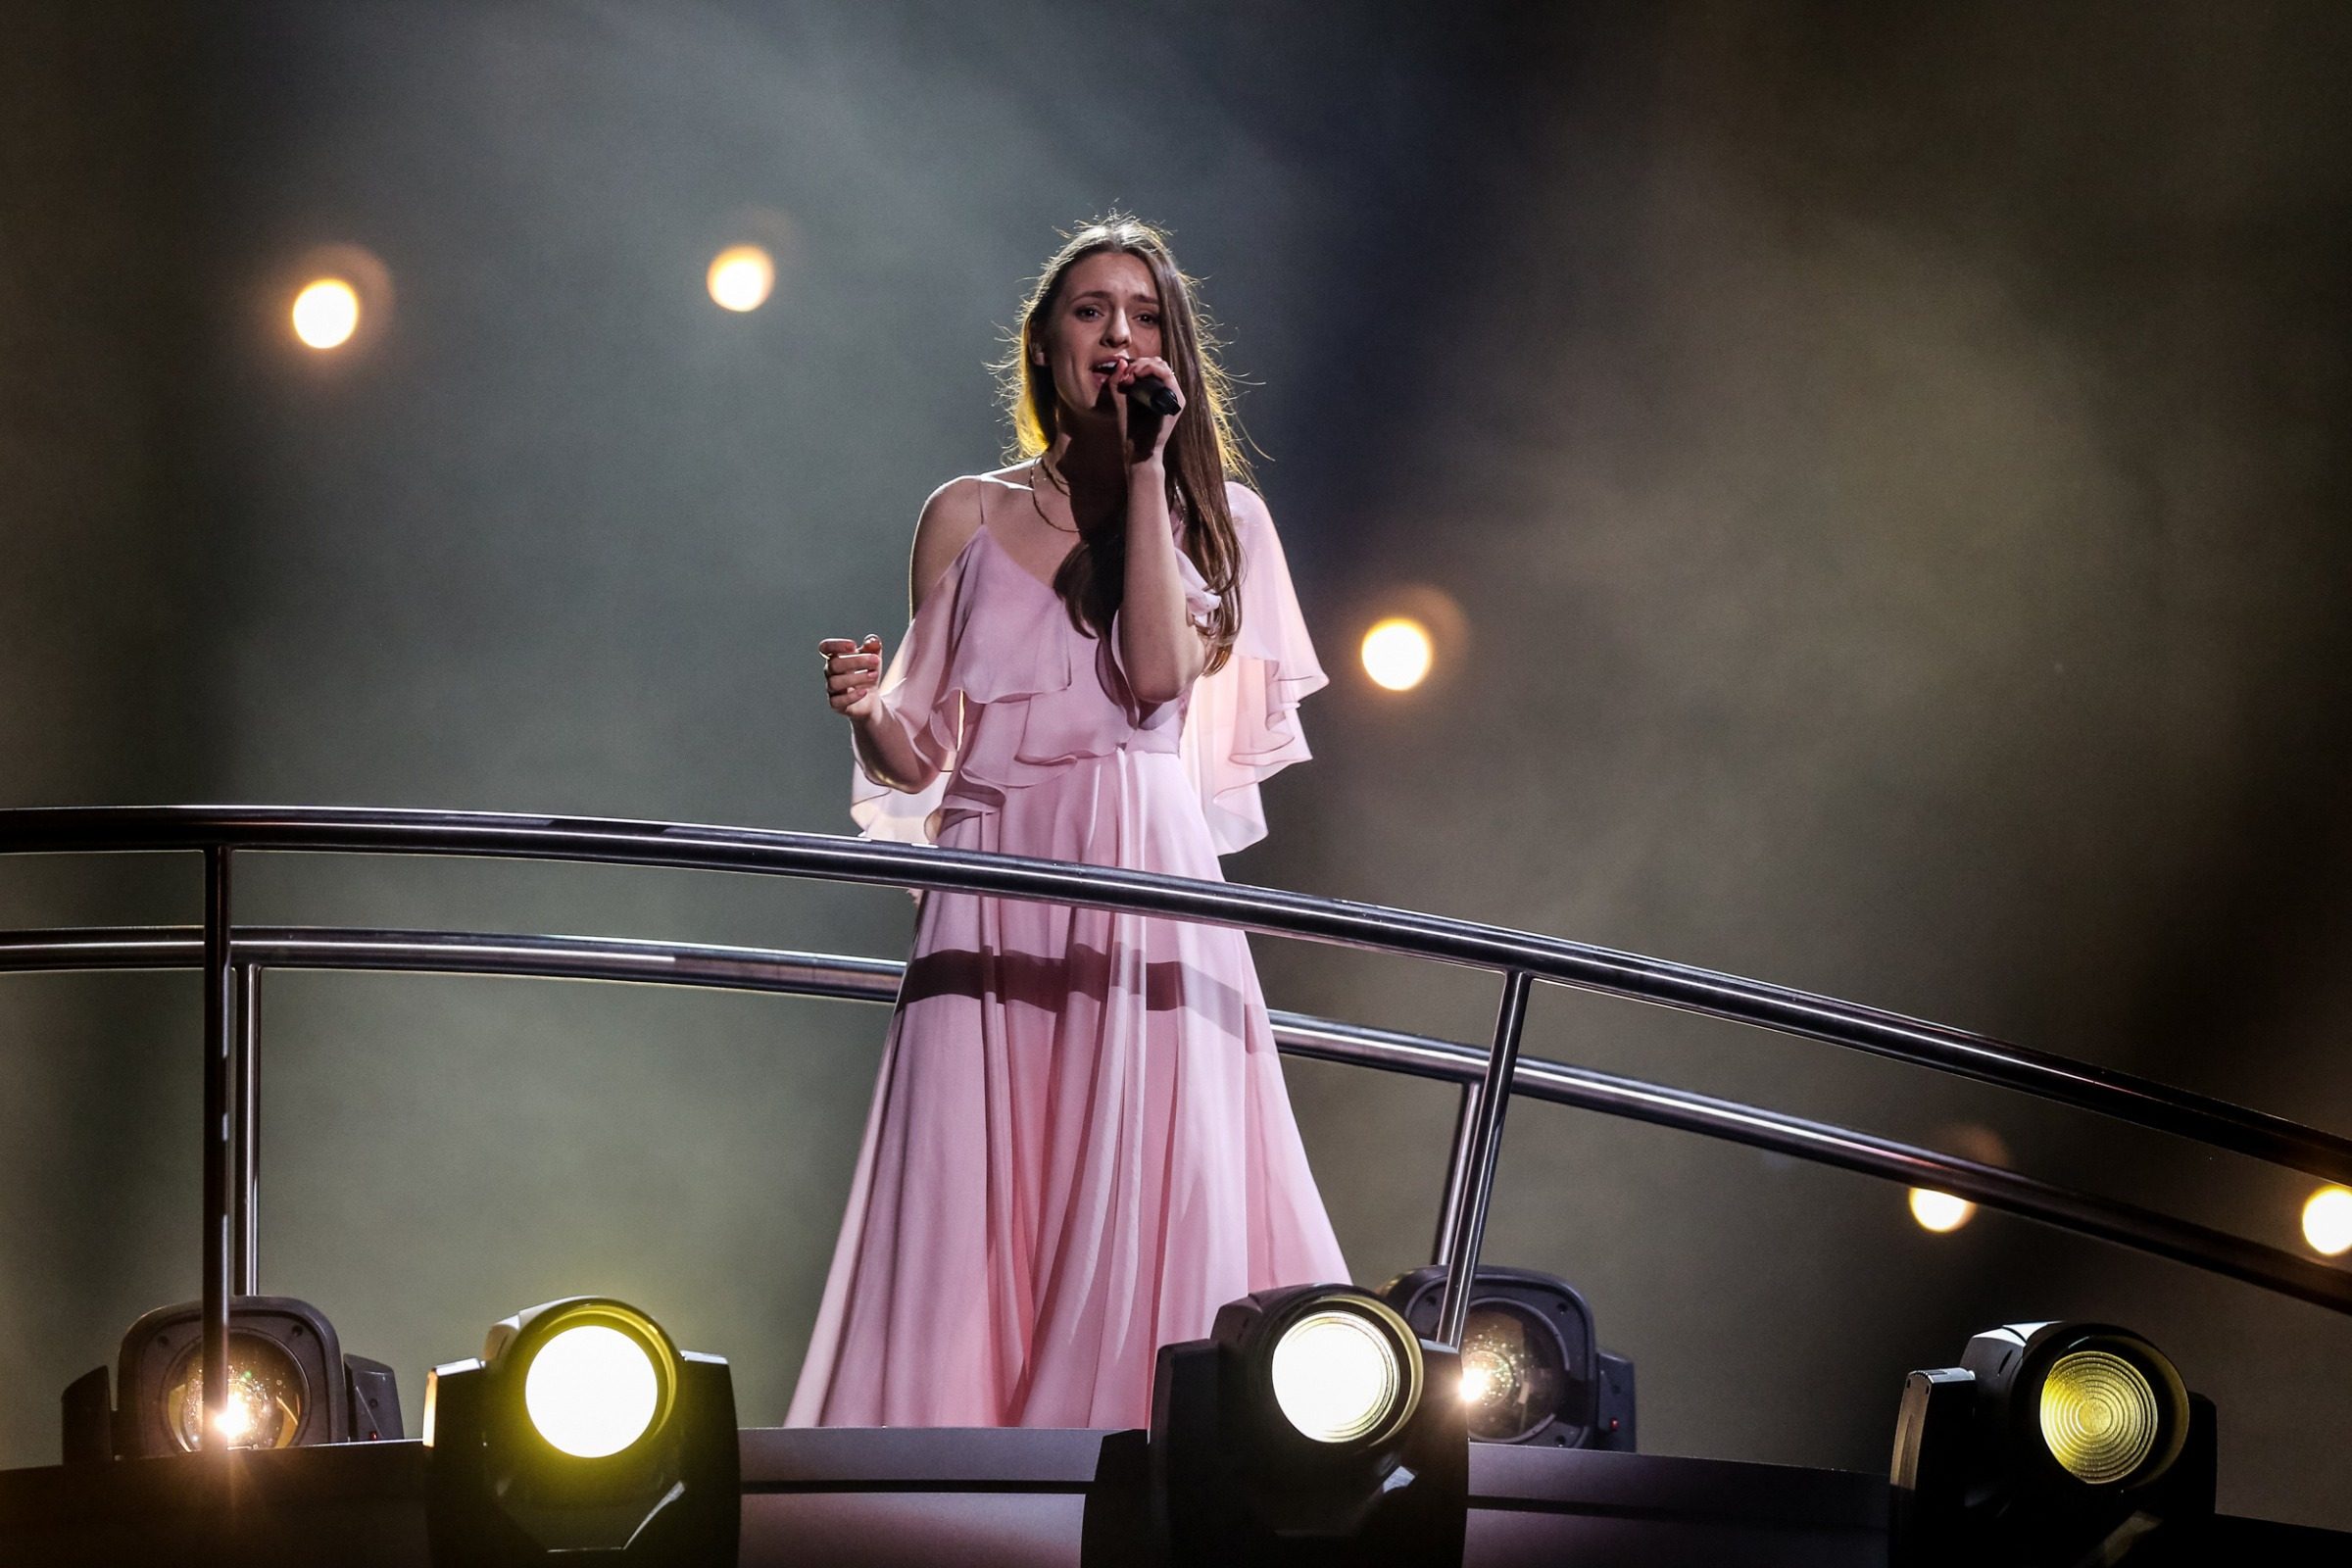 2018-05-07, Pirmadienio rytą Ieva Zasimauskaitė turėjo pirmąją generalinę repeticiją „Eurovizijos“ scenoje. 2018 m. Gegužės 07 d.